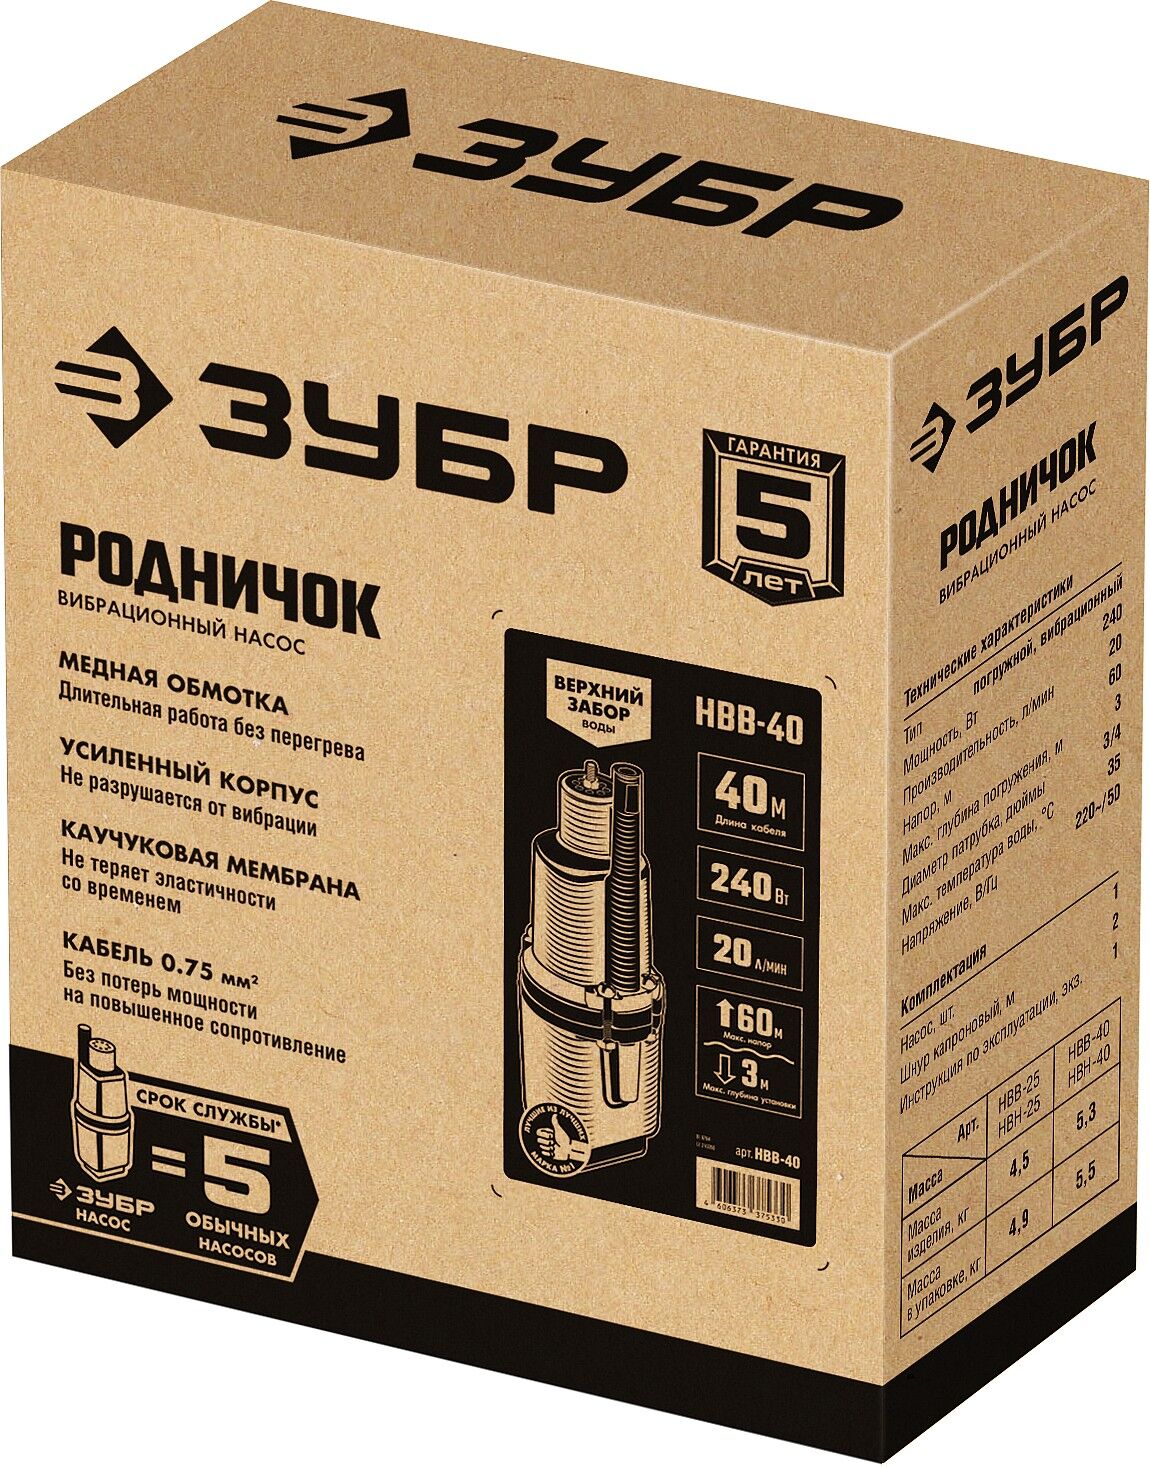 ЗУБР Родничок-В, 40 м, вибрационный насос с верхним забором (НВВ-40) Зубр